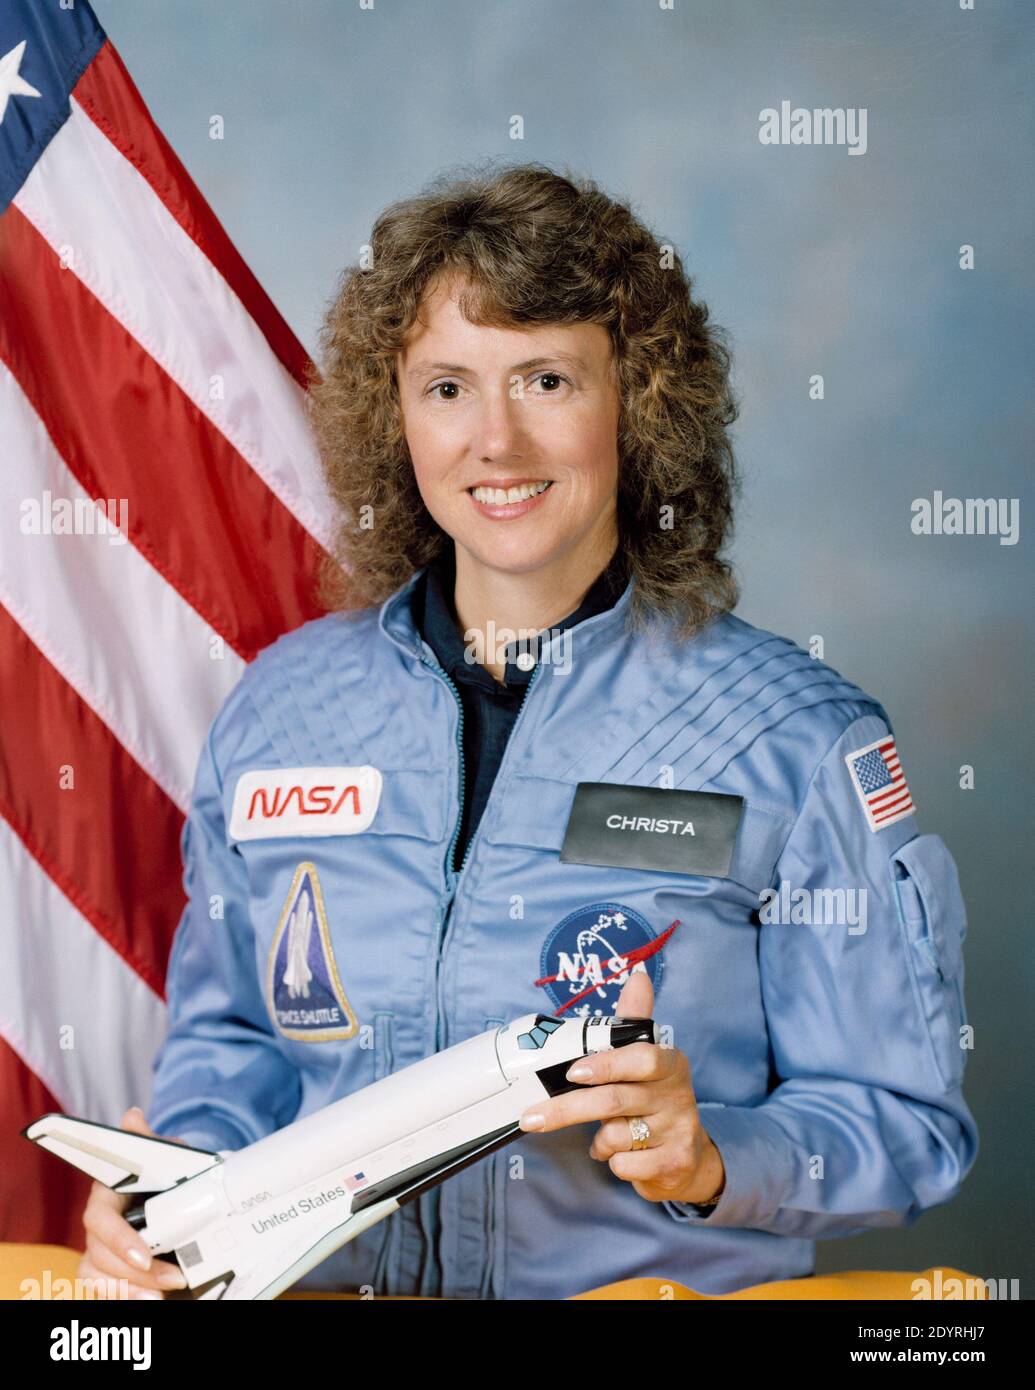 Sharon Christa McAuliffe (geb. Corrigan; 2. September 1948 – 28. Januar 1986) amerikanische Lehrerin und Astronautin und eines der sieben Besatzungsmitglieder, die bei der Space Shuttle Challenger-Katastrophe ums Leben kamen. Stockfoto